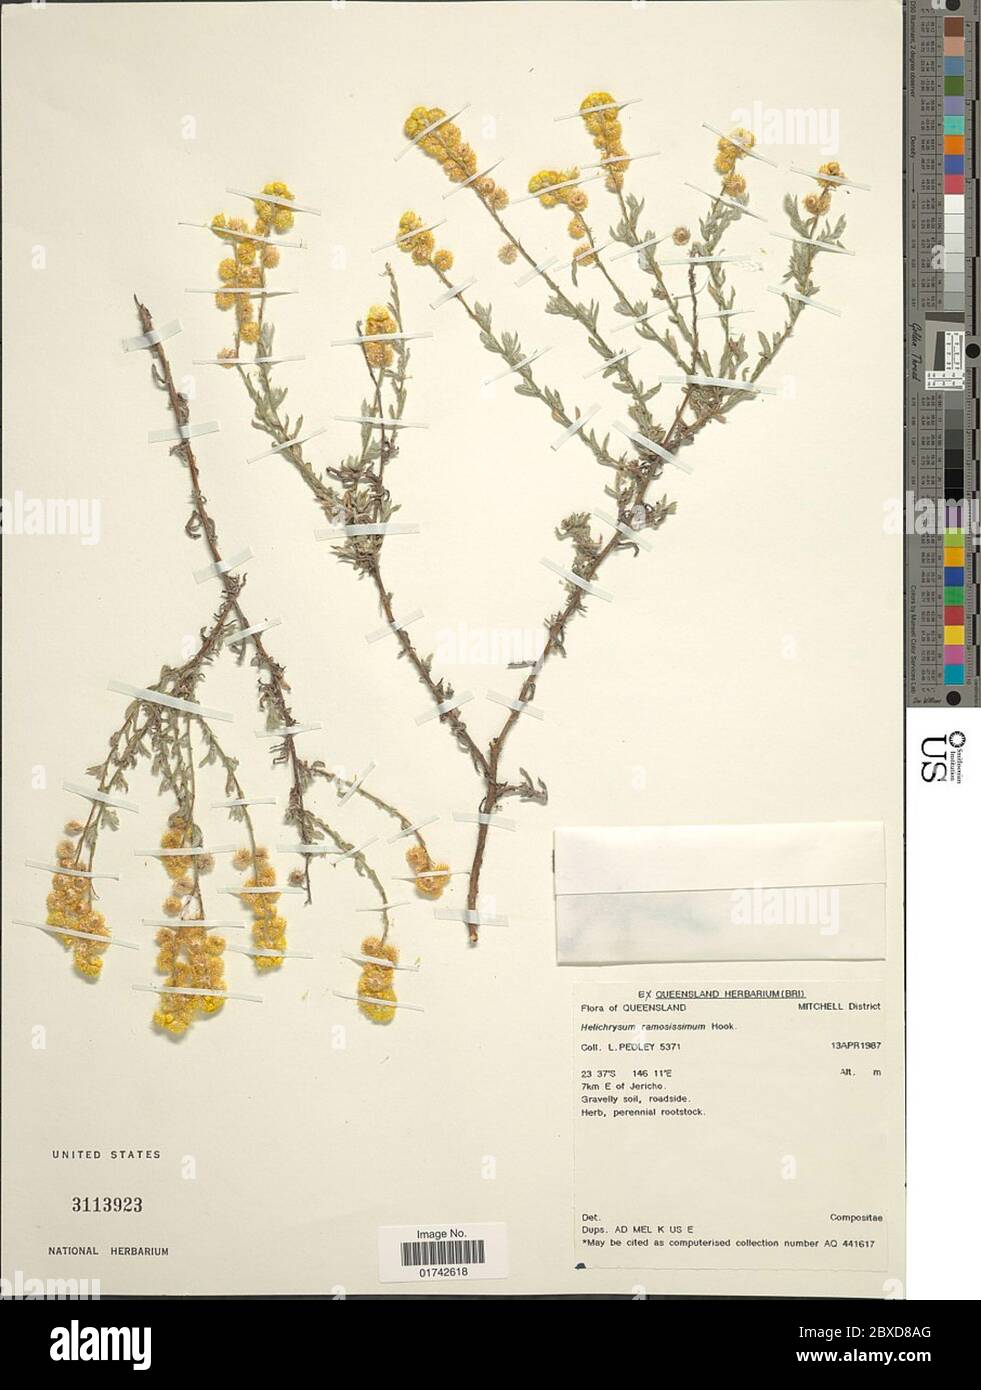 Helichrysum ramosissimum Hook Helichrysum ramosissimum Hook. Stock Photo